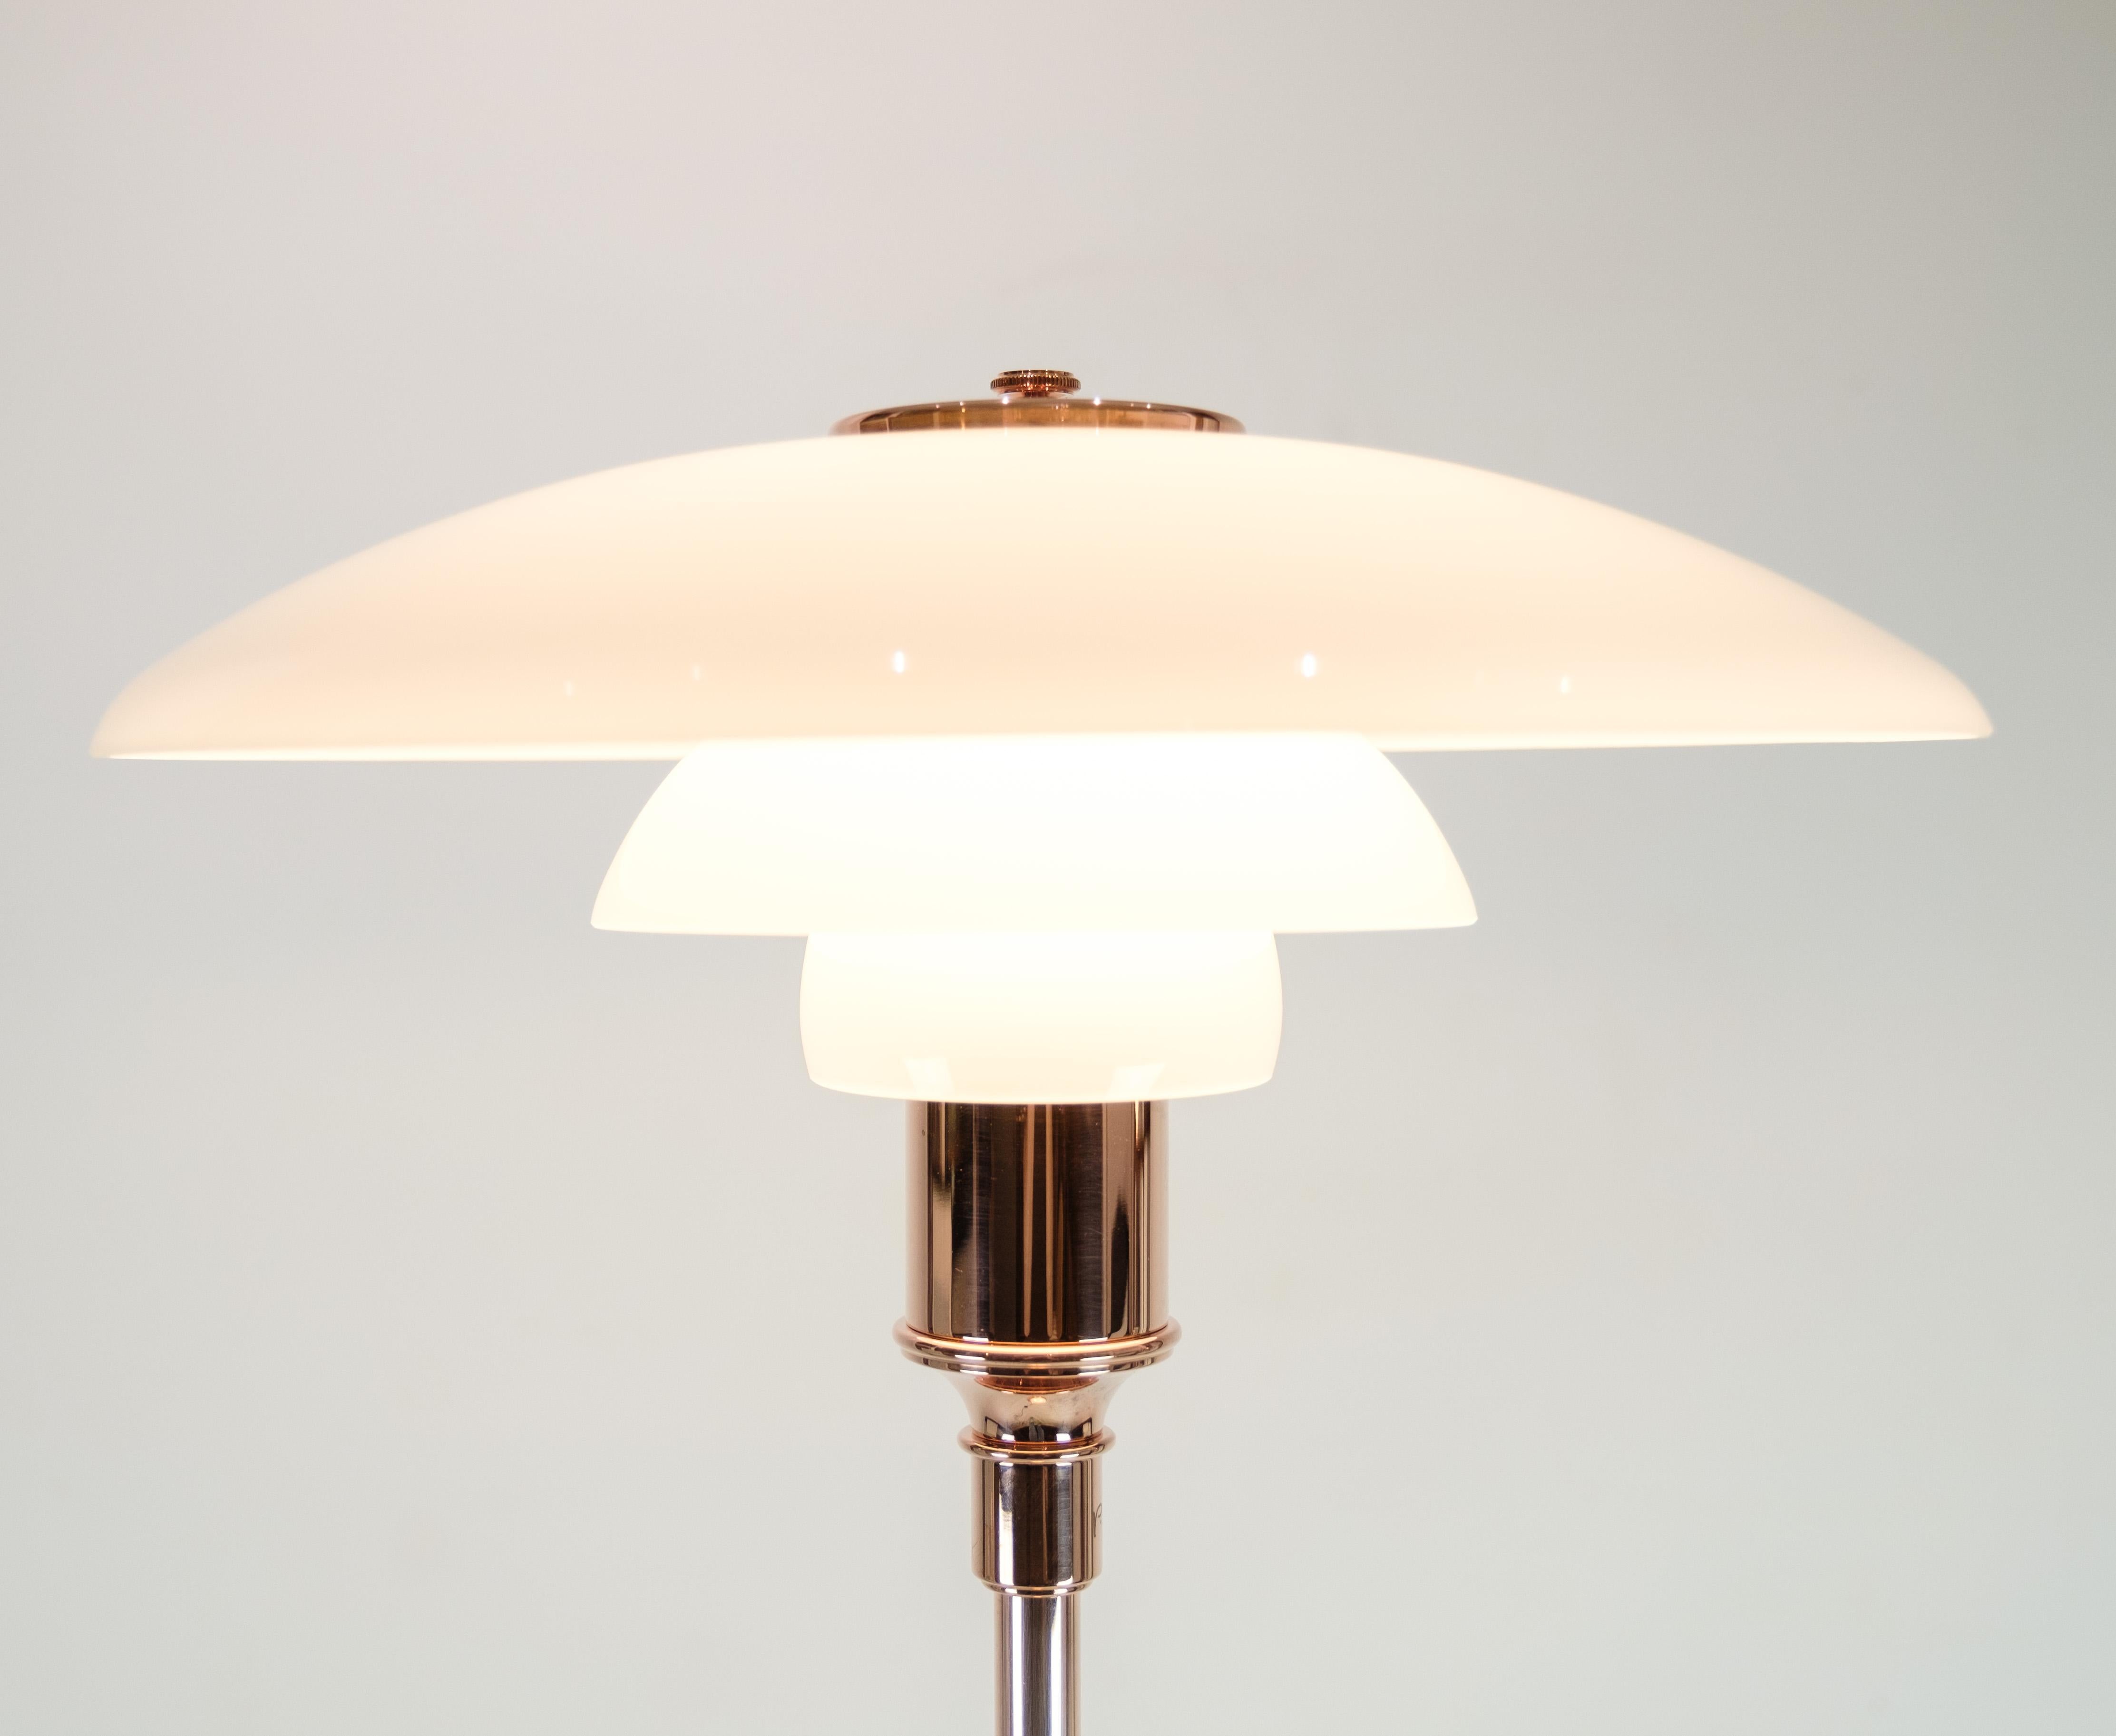 Lampadaire PH, modèle PH3½-2½, édition limitée en cuivre conçu par Poul Henningsen et produit par Louis Poulsen. La lampe comporte trois abat-jour en verre opalin blanc. La lampe a été vendue uniquement entre le 1er octobre et le 31 décembre 2016.